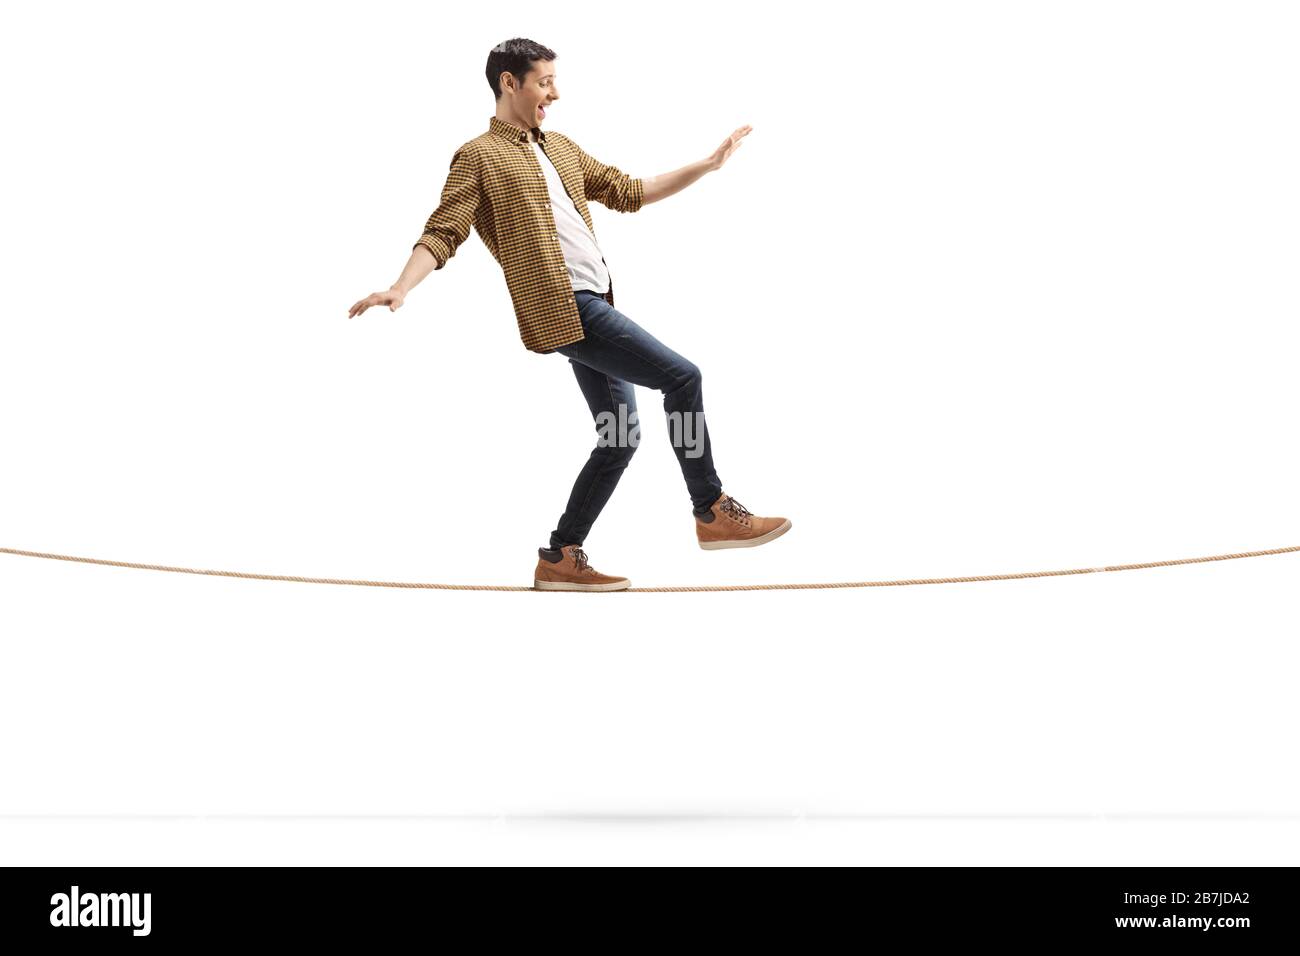 Photo de profil pleine longueur d'un jeune homme marchant sur une corde isolée sur fond blanc Banque D'Images